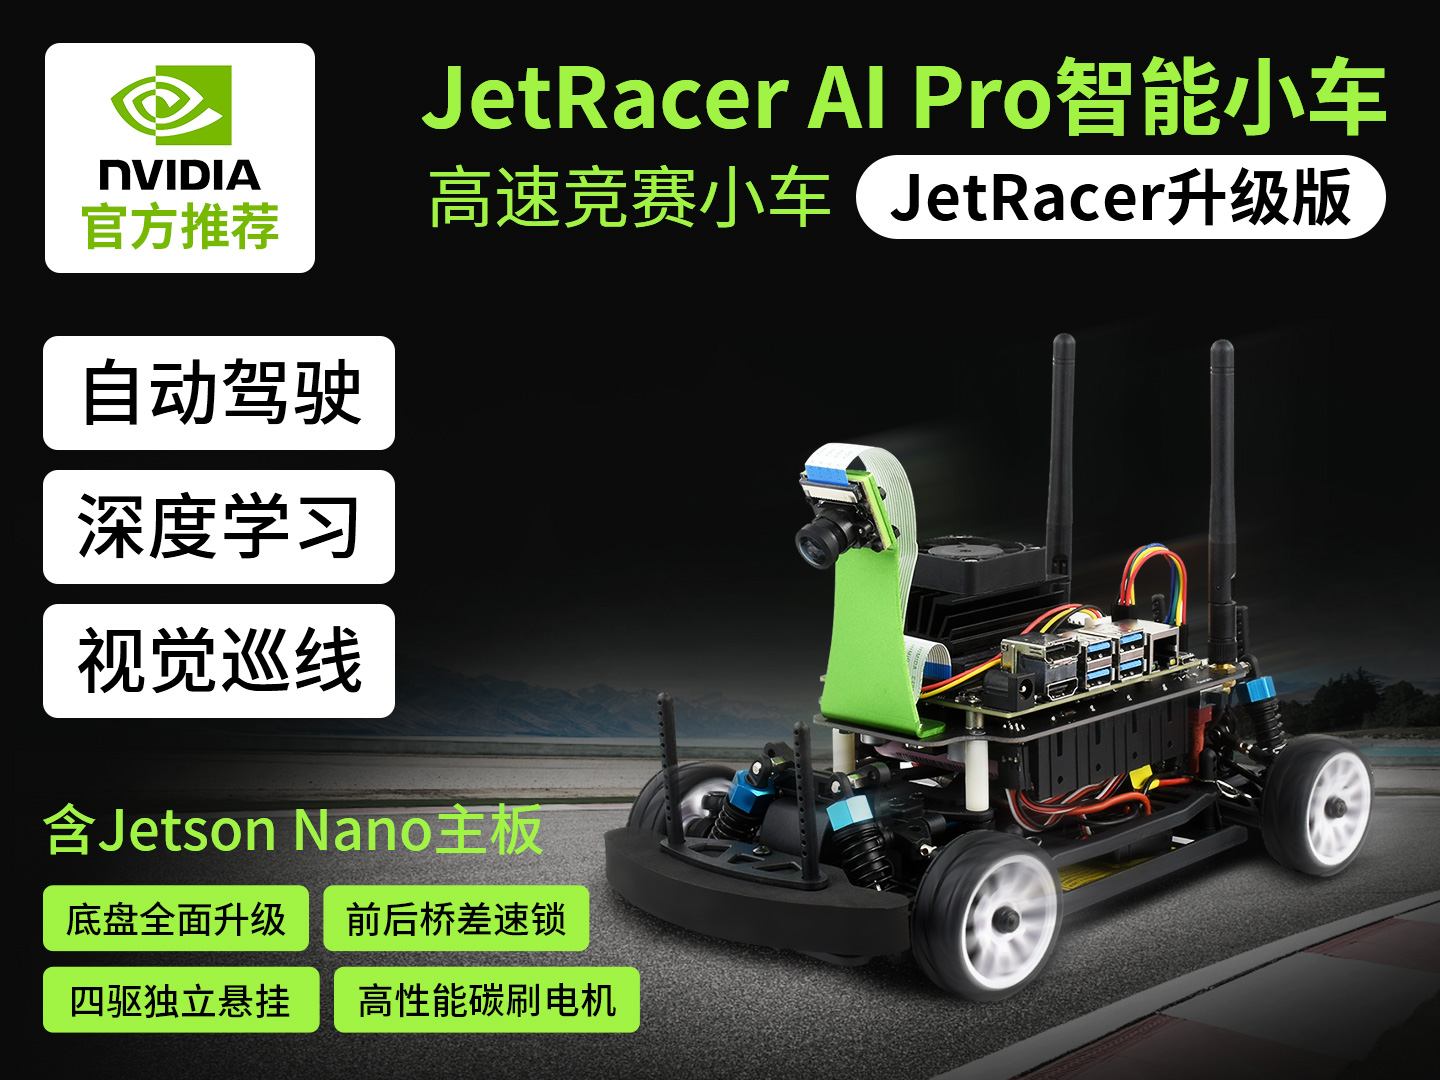 JetRacer Pro人工智能小车AI赛车机器人 高速竞赛赛车 自动驾驶 深度学习 套餐 A(含英伟达Jetson Nano官方套件)